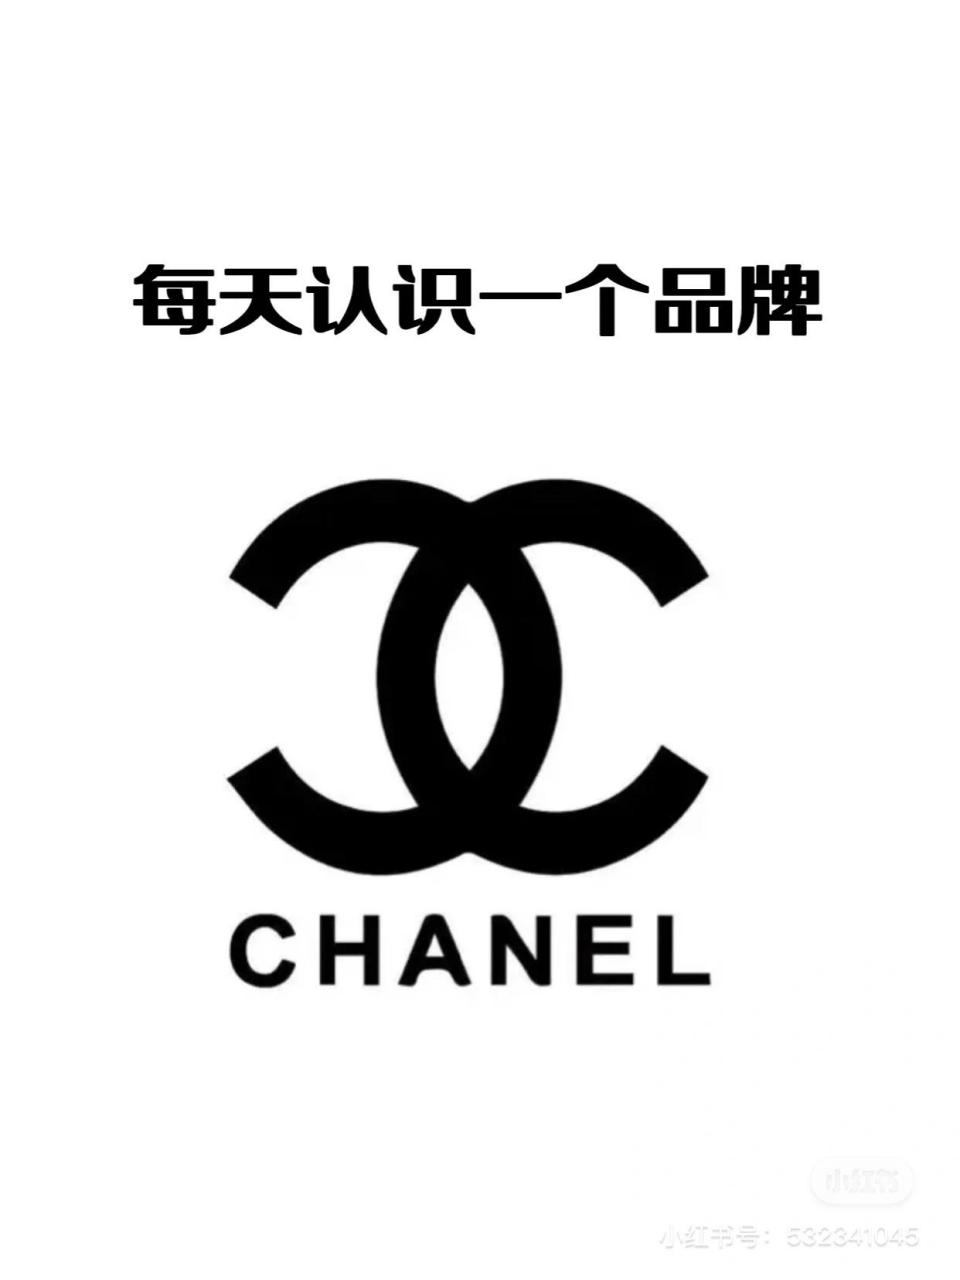 香奈儿(chanel)品牌 香奈儿(chanel)是法国奢侈品品牌,由可可·香奈儿